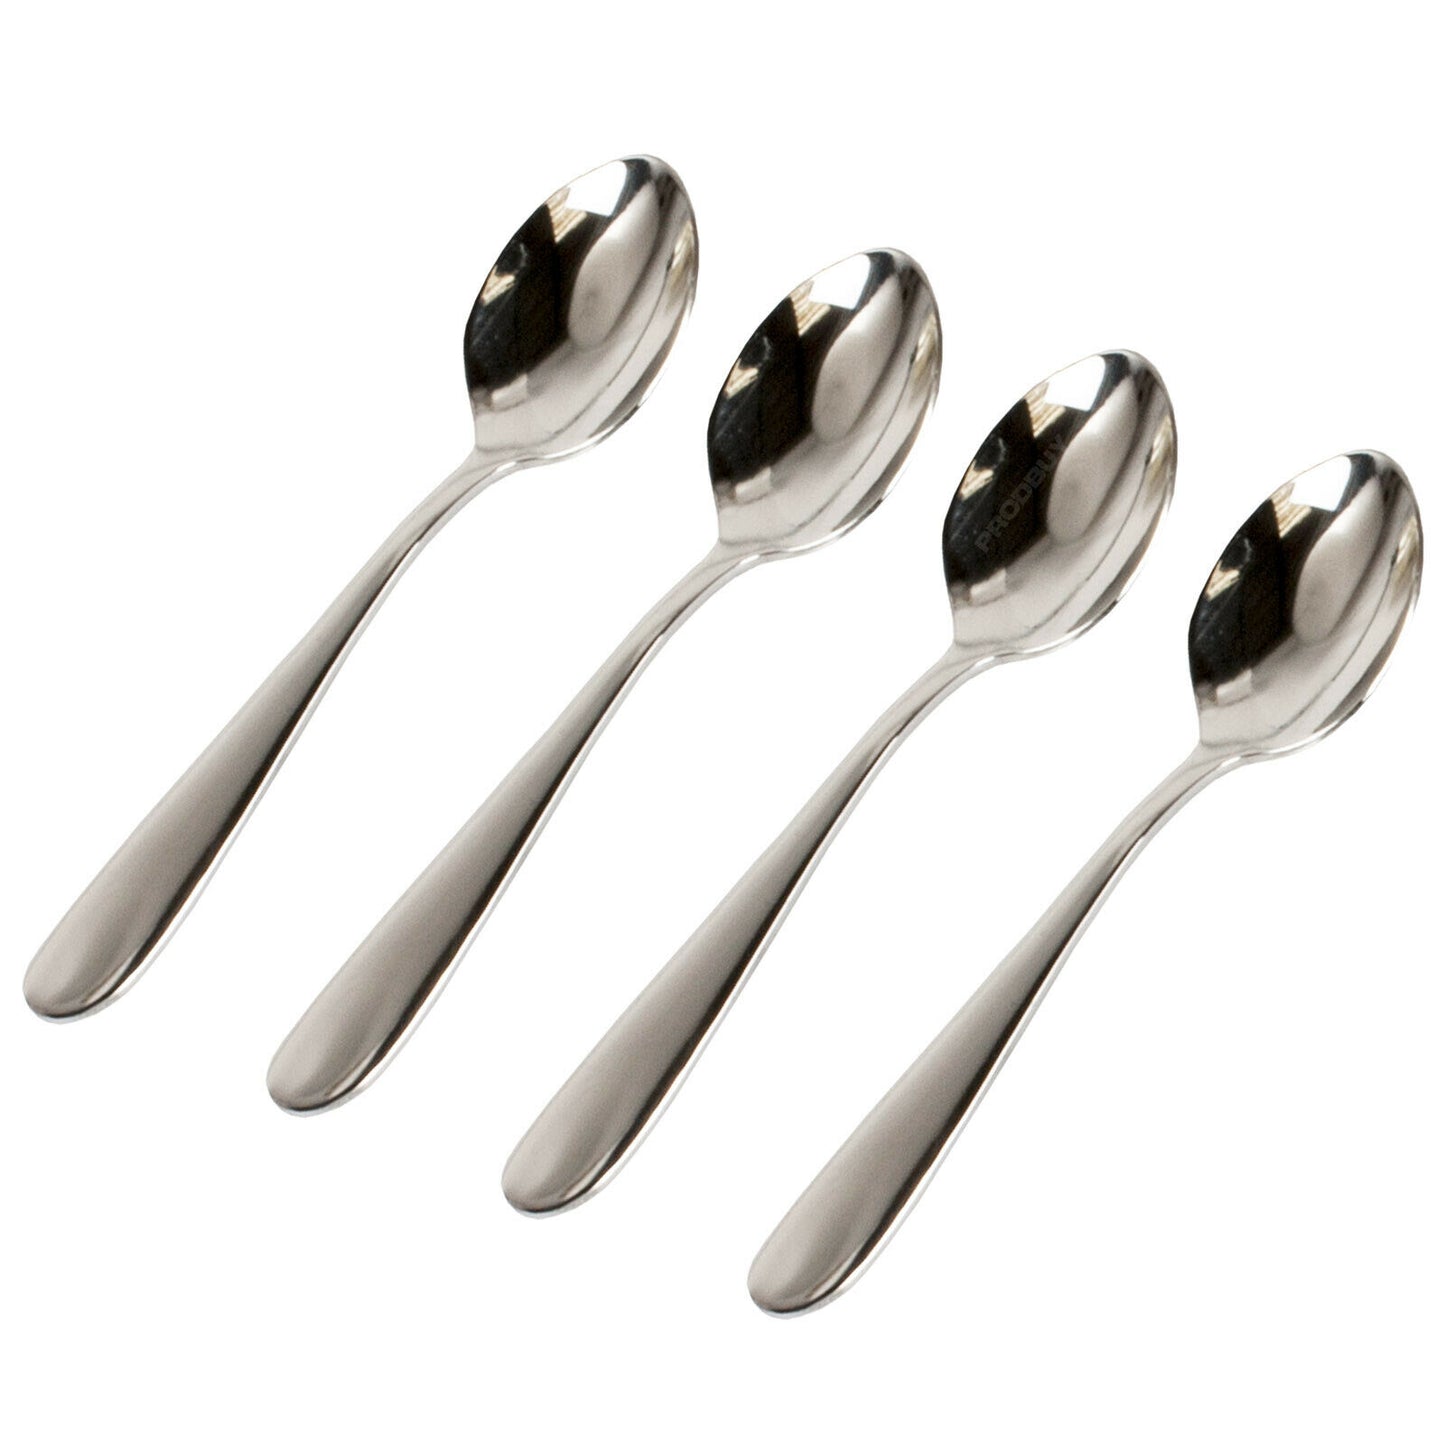 Grunwerg Windsor Pattern Espresso Spoons Stainless Steel